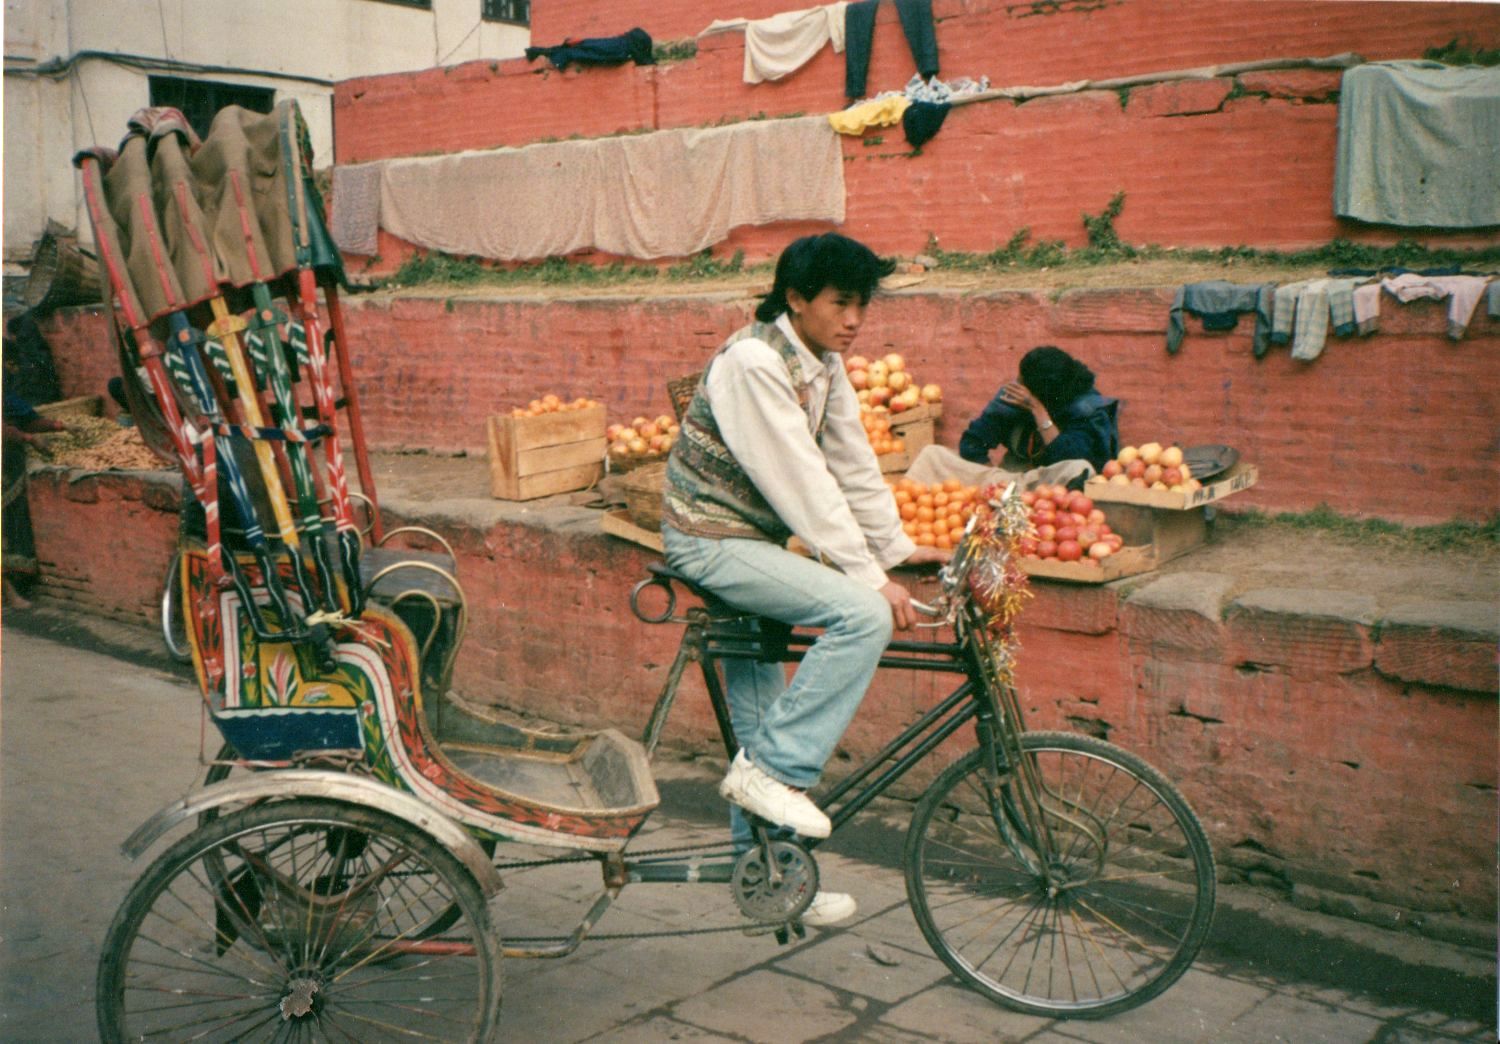 Bicycle Rickshaw in Durbar Square in Kathmandu